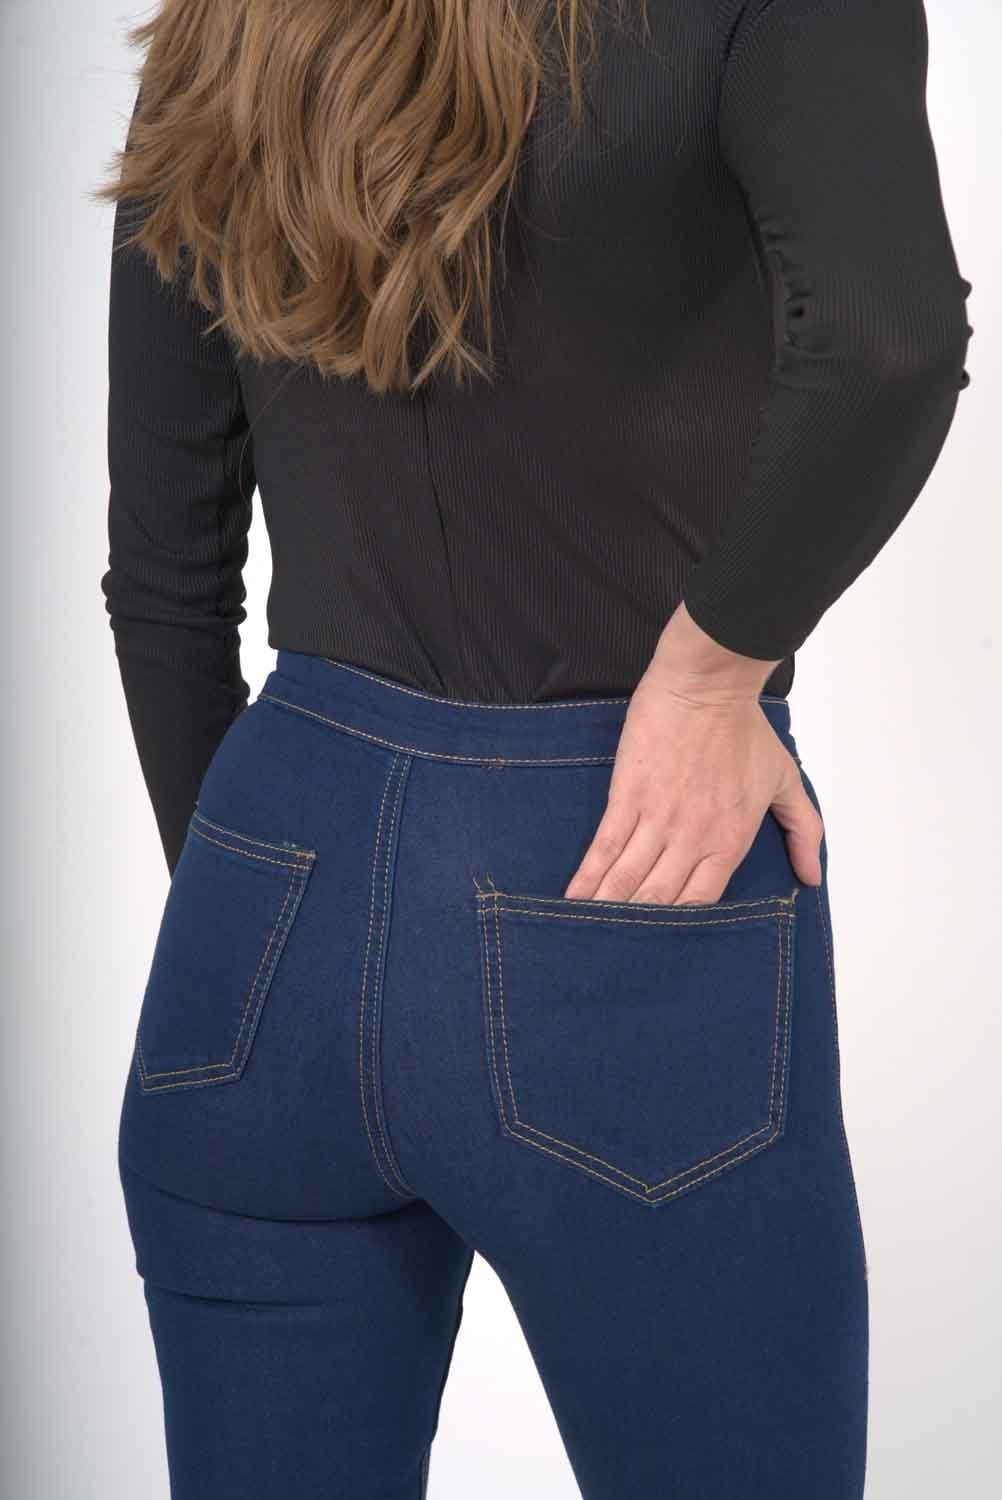 Women's Sierra Skinny Jeans - Women - Apparel - Pants - Jeans - Benn~Burry